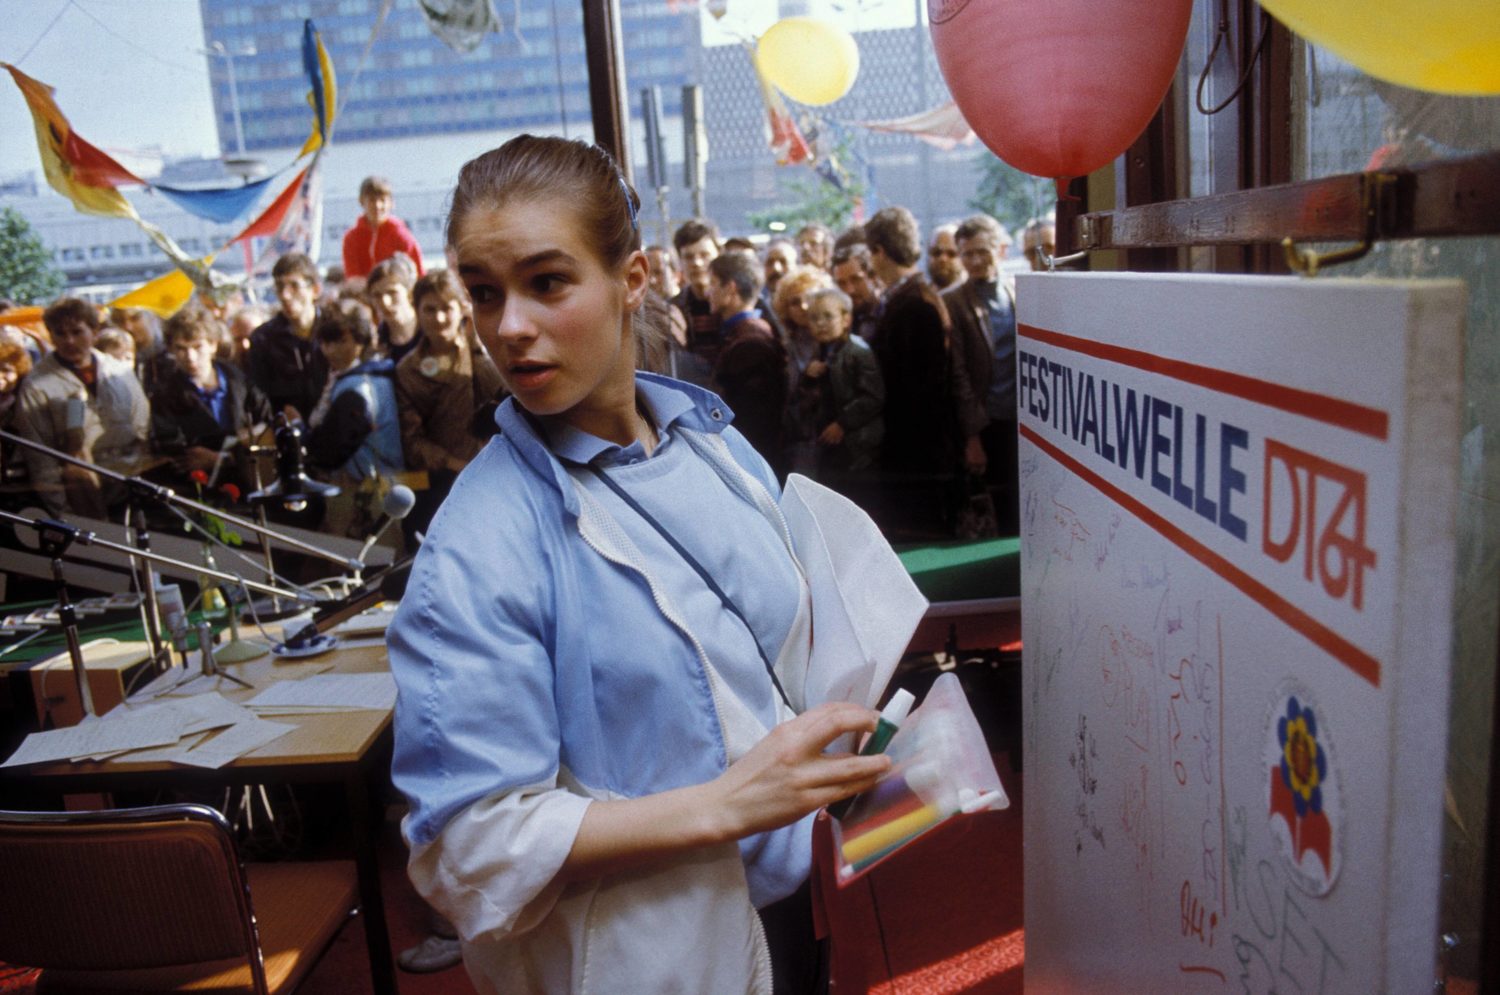 Radio Berlin: Die Eiskunstläuferin Katarina Witt hat anlässlich des Nationalen Jugendfestivals der DDR ihren Namen auf die Autogrammwand des Jugendsenders DT64 gesetzt, Sommer 1984. Foto: Imago/Günter Gueffroy